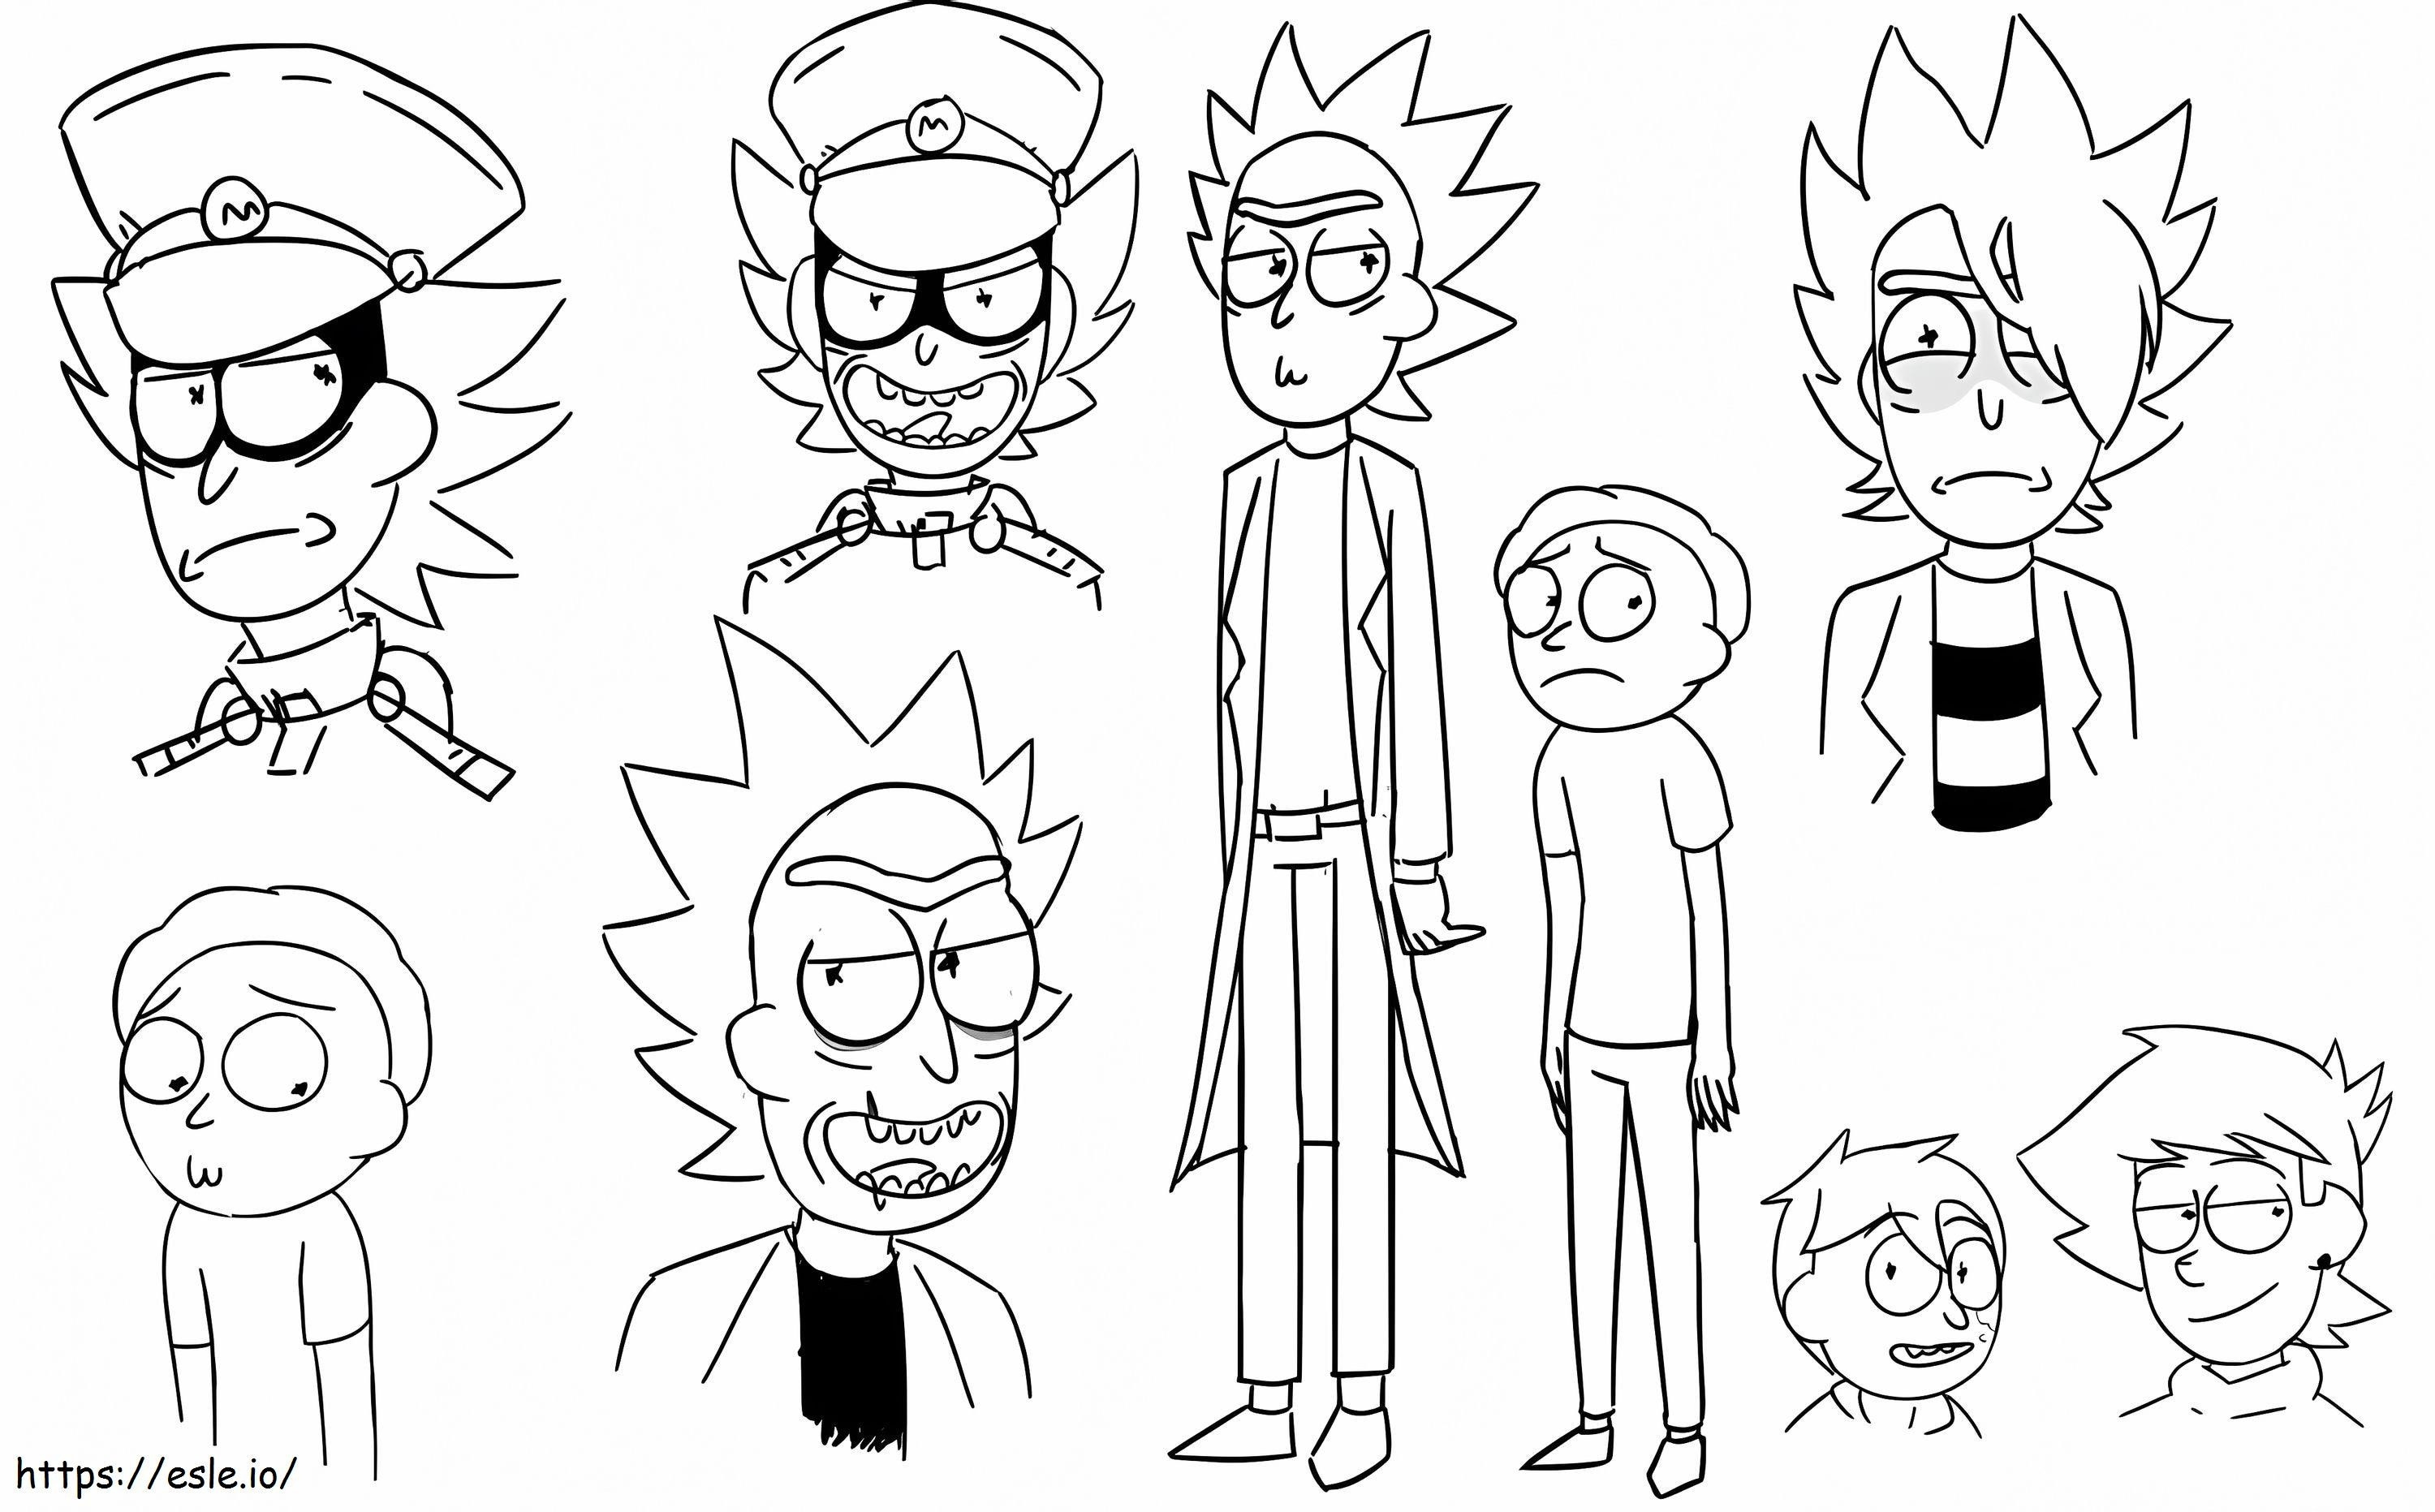 Personajes de Rick y Morty para colorear